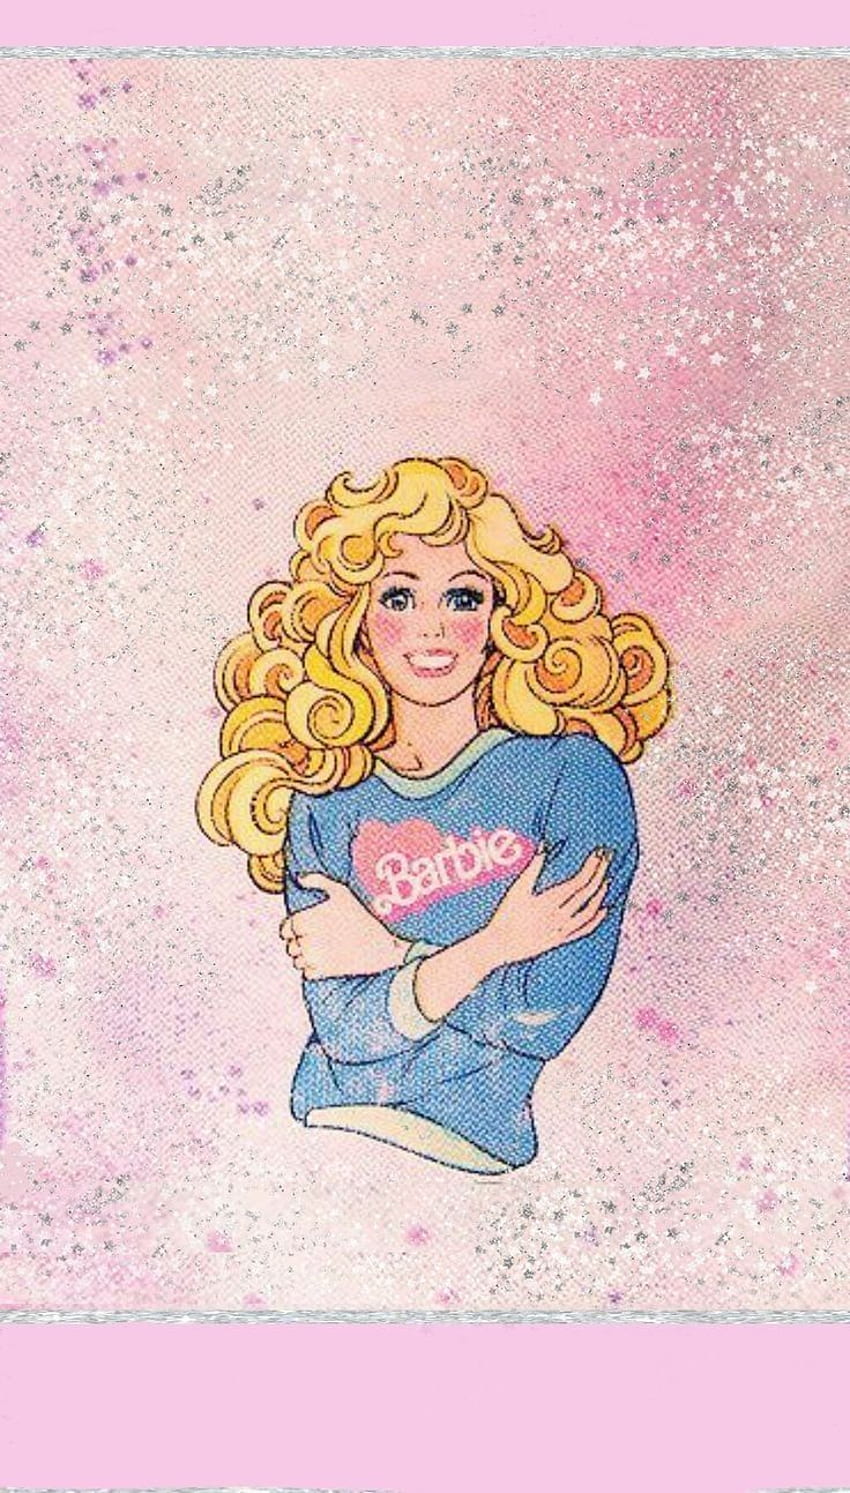 Barbie | crayola.com